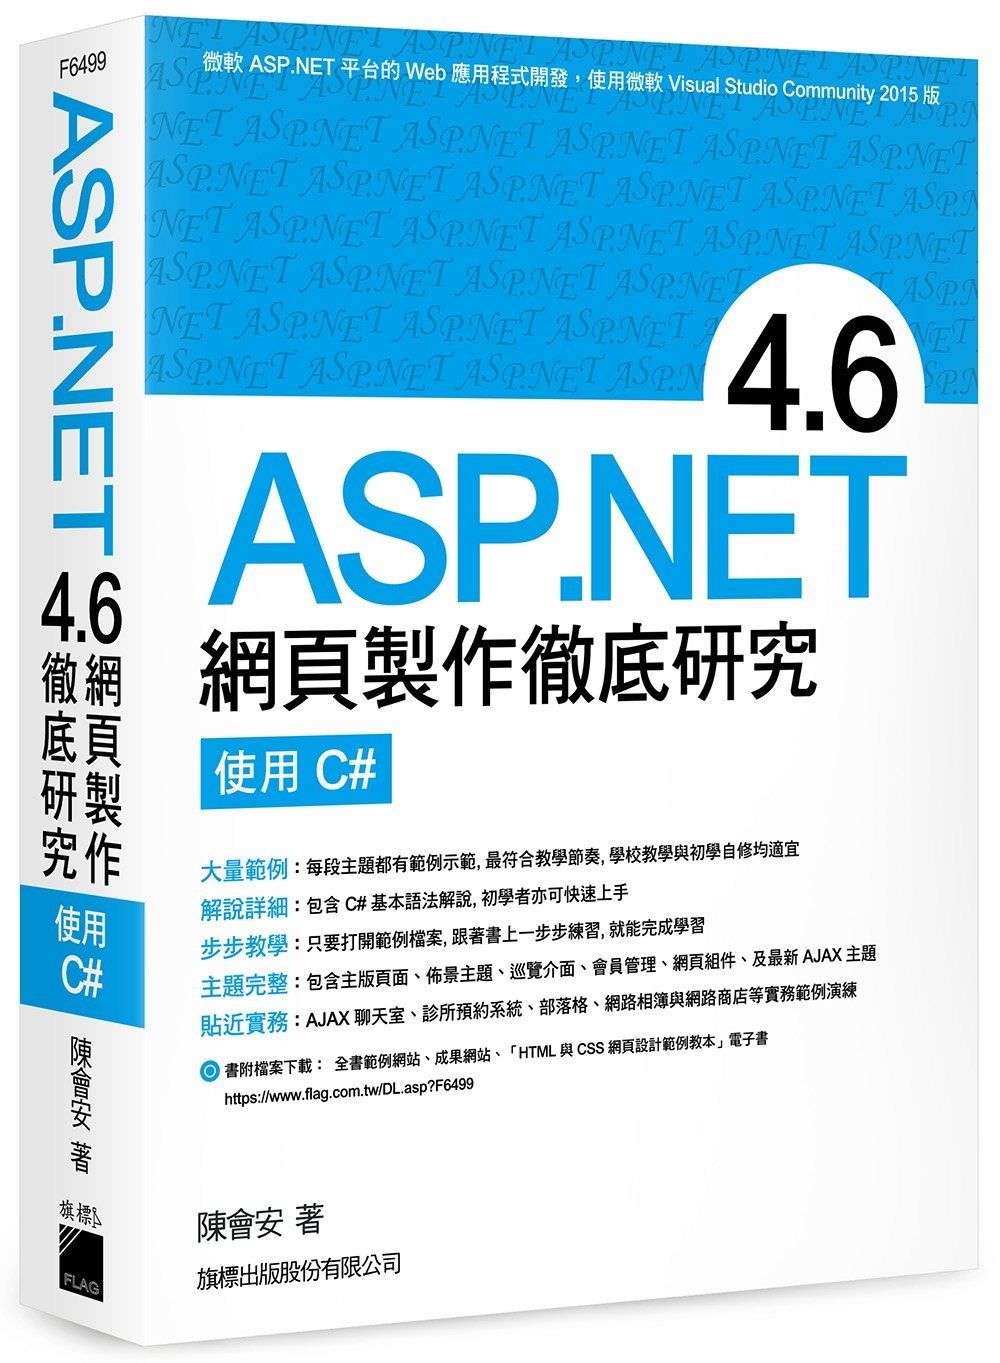 SP.NET 4.6 網頁製作徹底研究 - 使用 C#